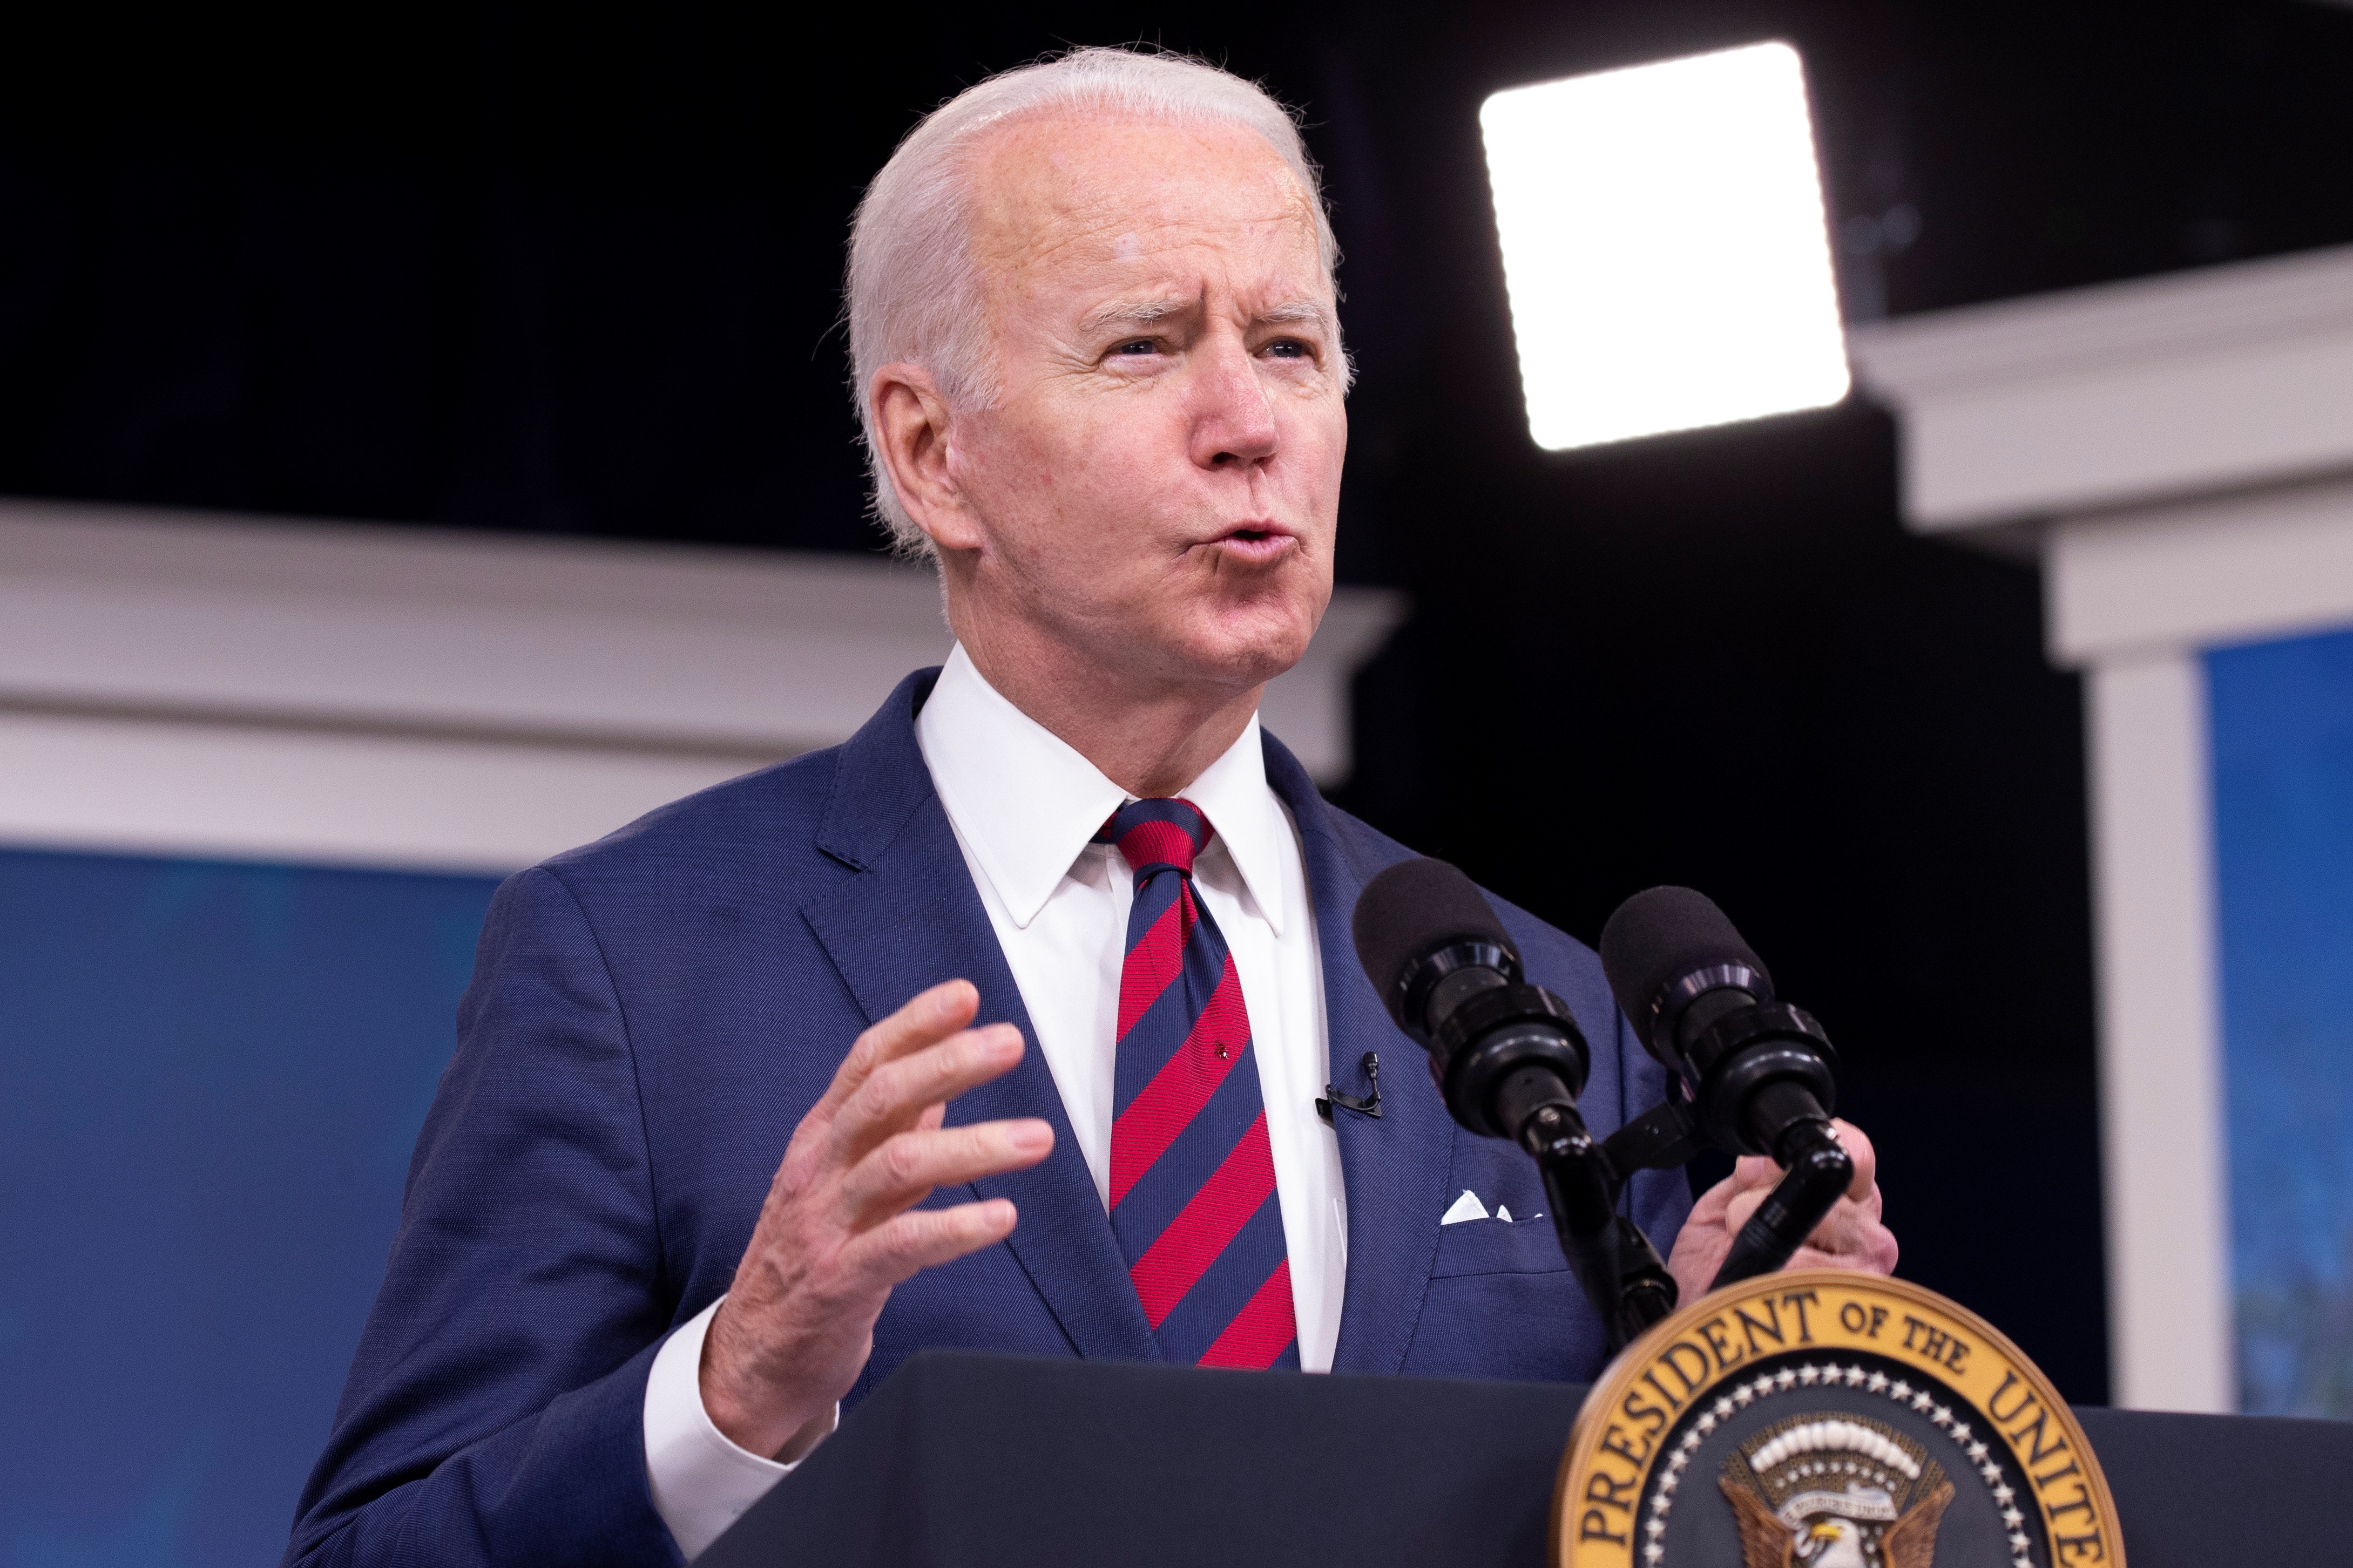 EEUU “responderá con decisión” si Rusia la invade, dijo Biden al presidente de Ucrania